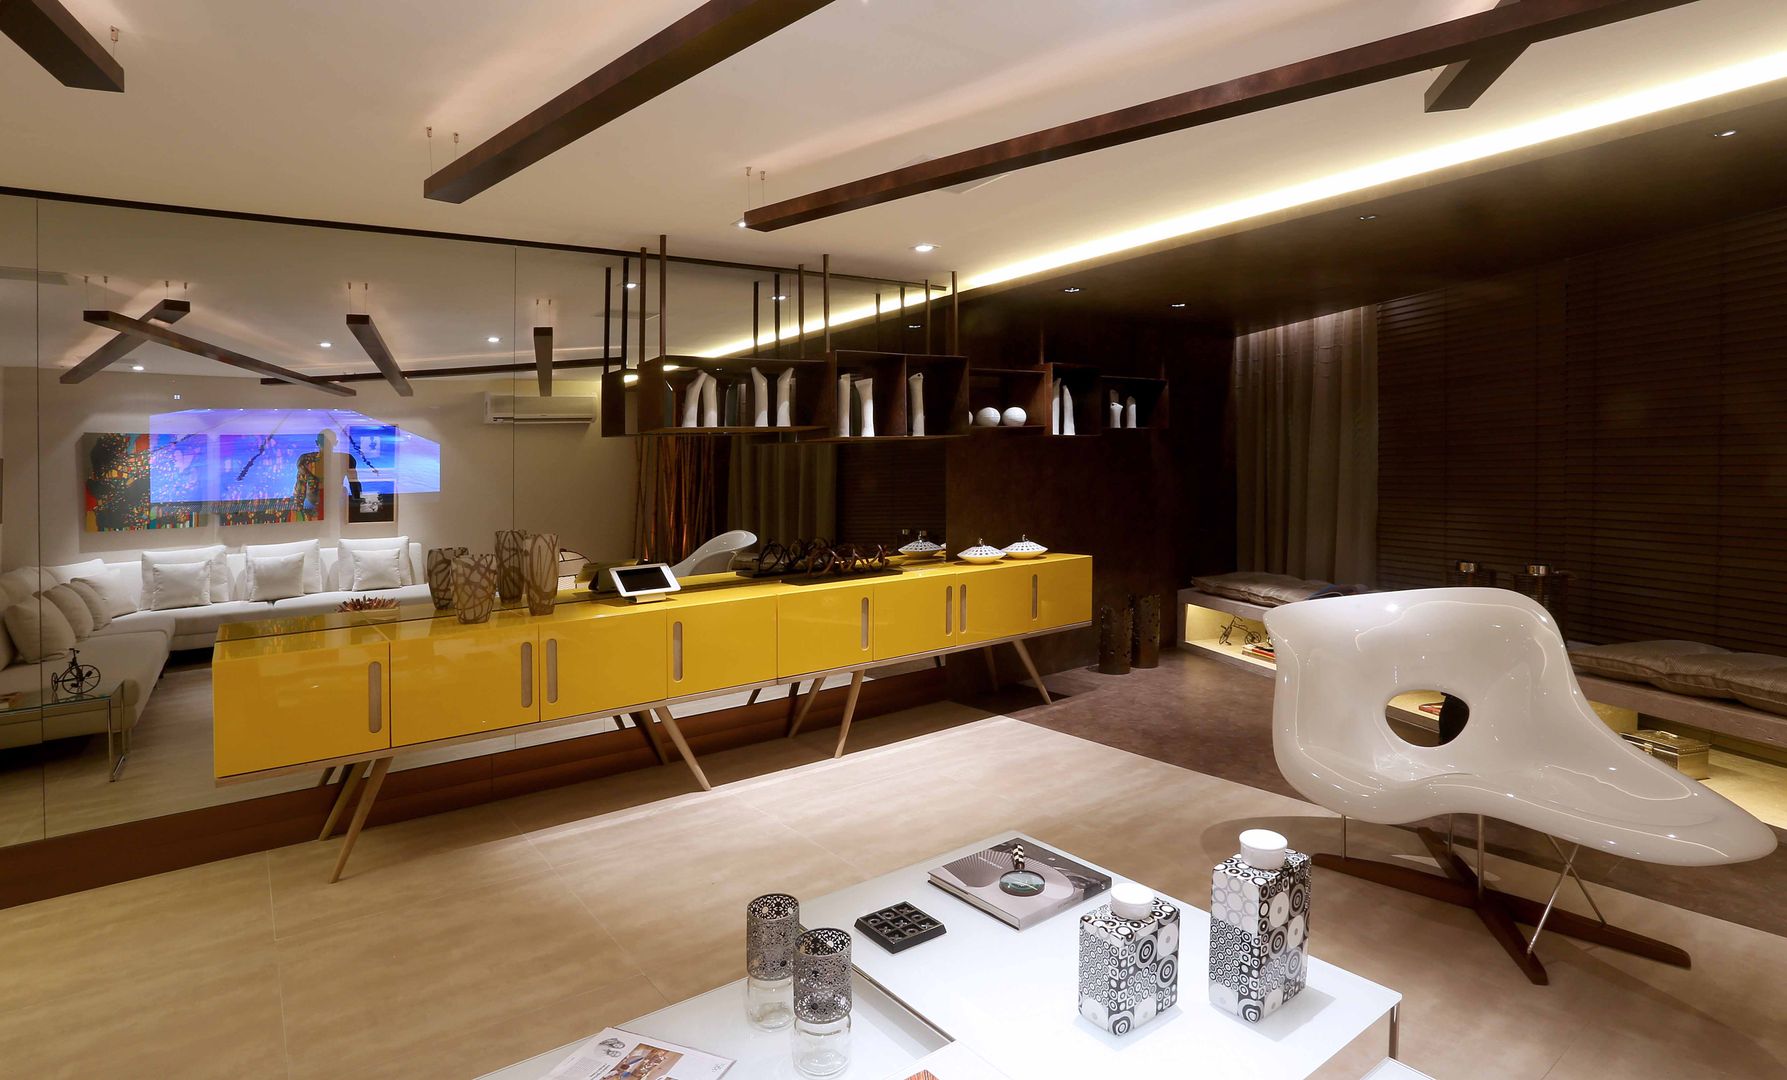 Sala de Estar- Mostra Casa Design, Andréa Spelzon Interiores Andréa Spelzon Interiores Livings de estilo moderno